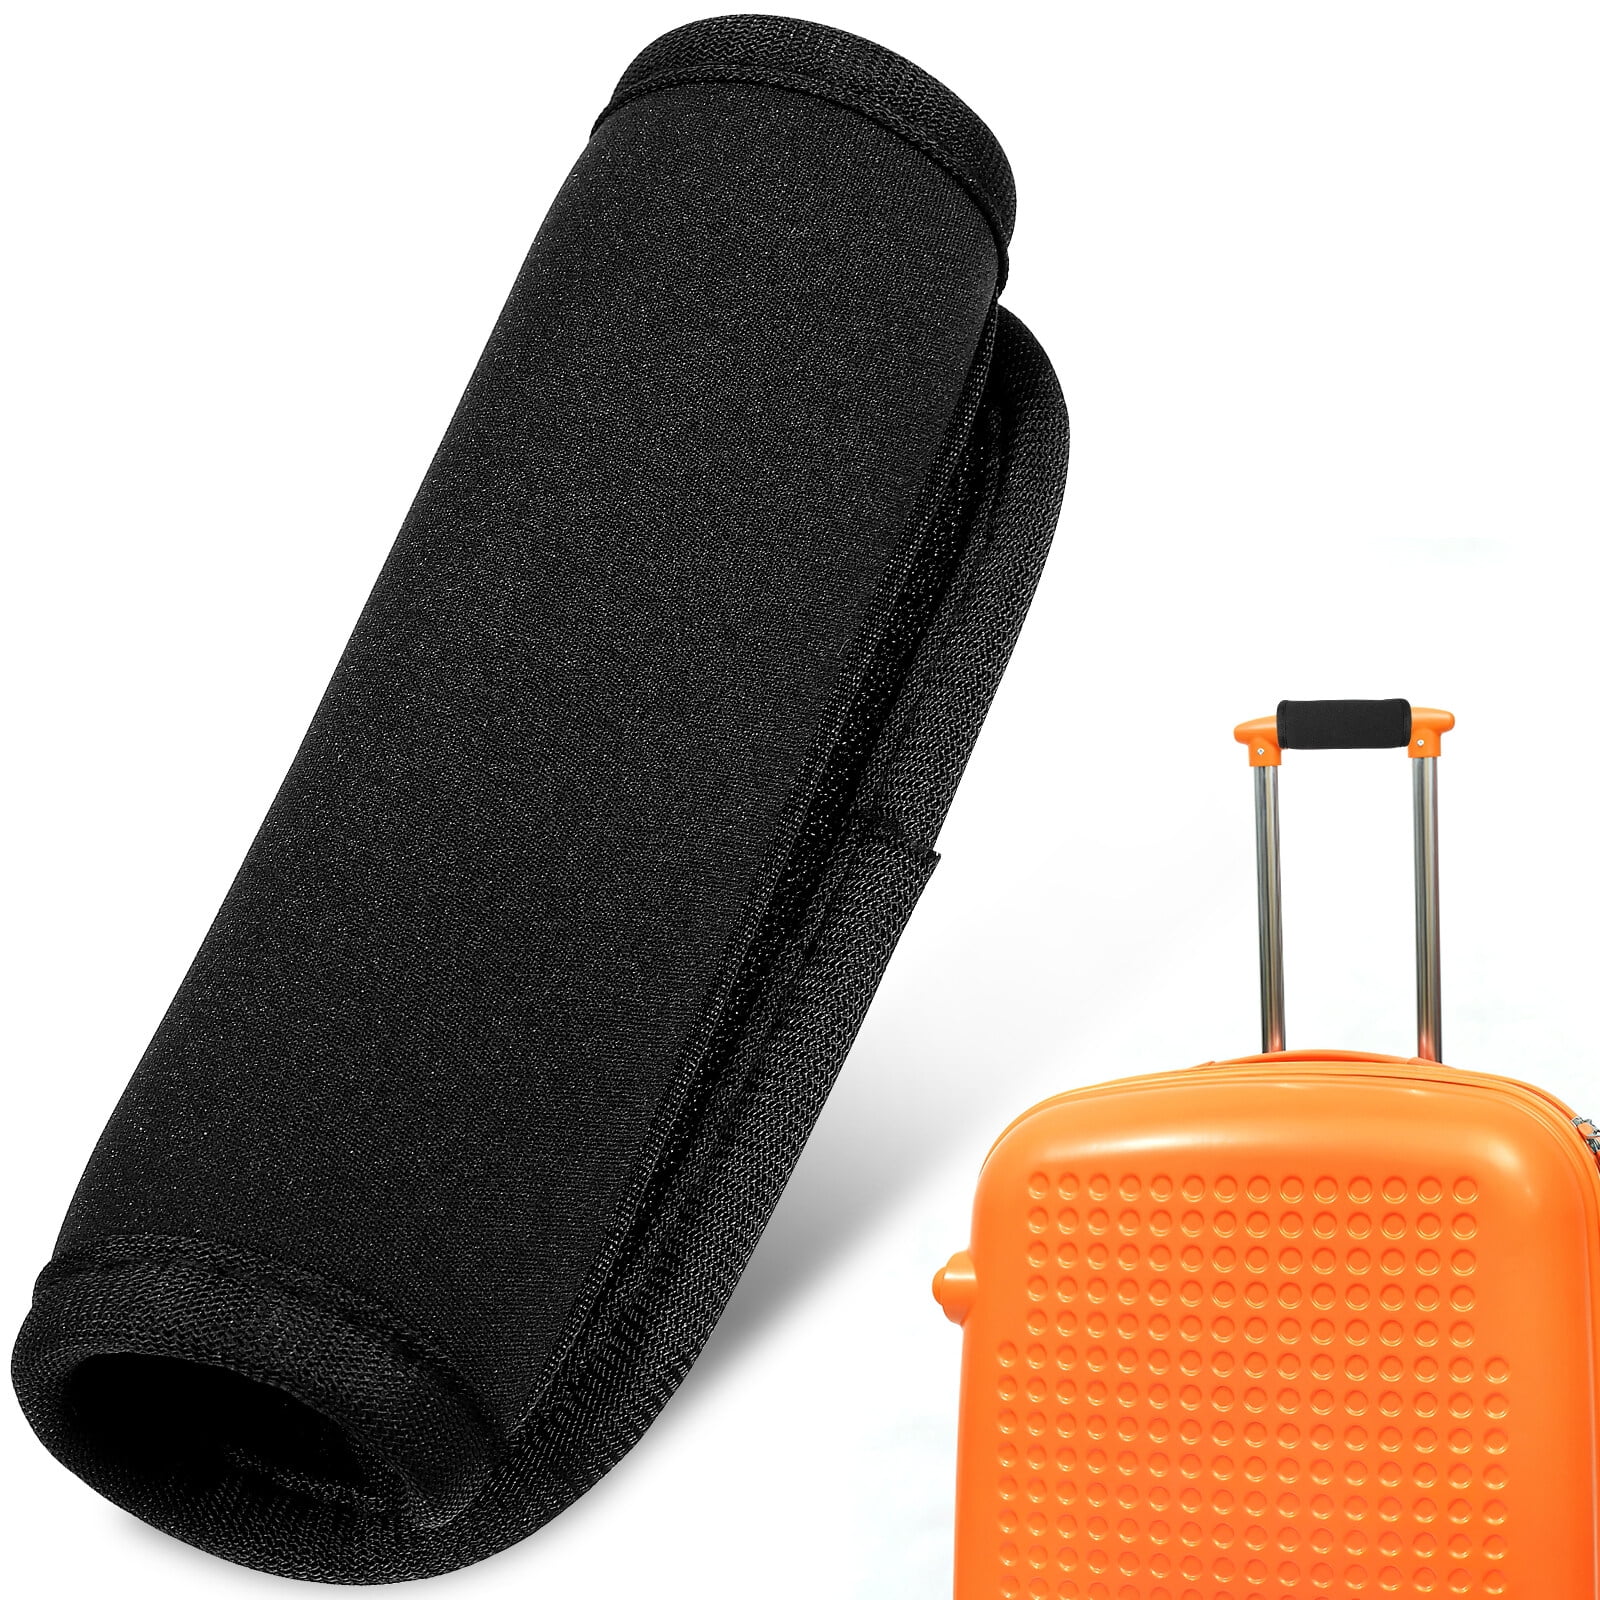 2Pcs Handbag Handle Leather Bag Wrap Covers Replacement Handle Protectors Purse  Strap Cover Handle Grip Suitcase Travel Bag Black 